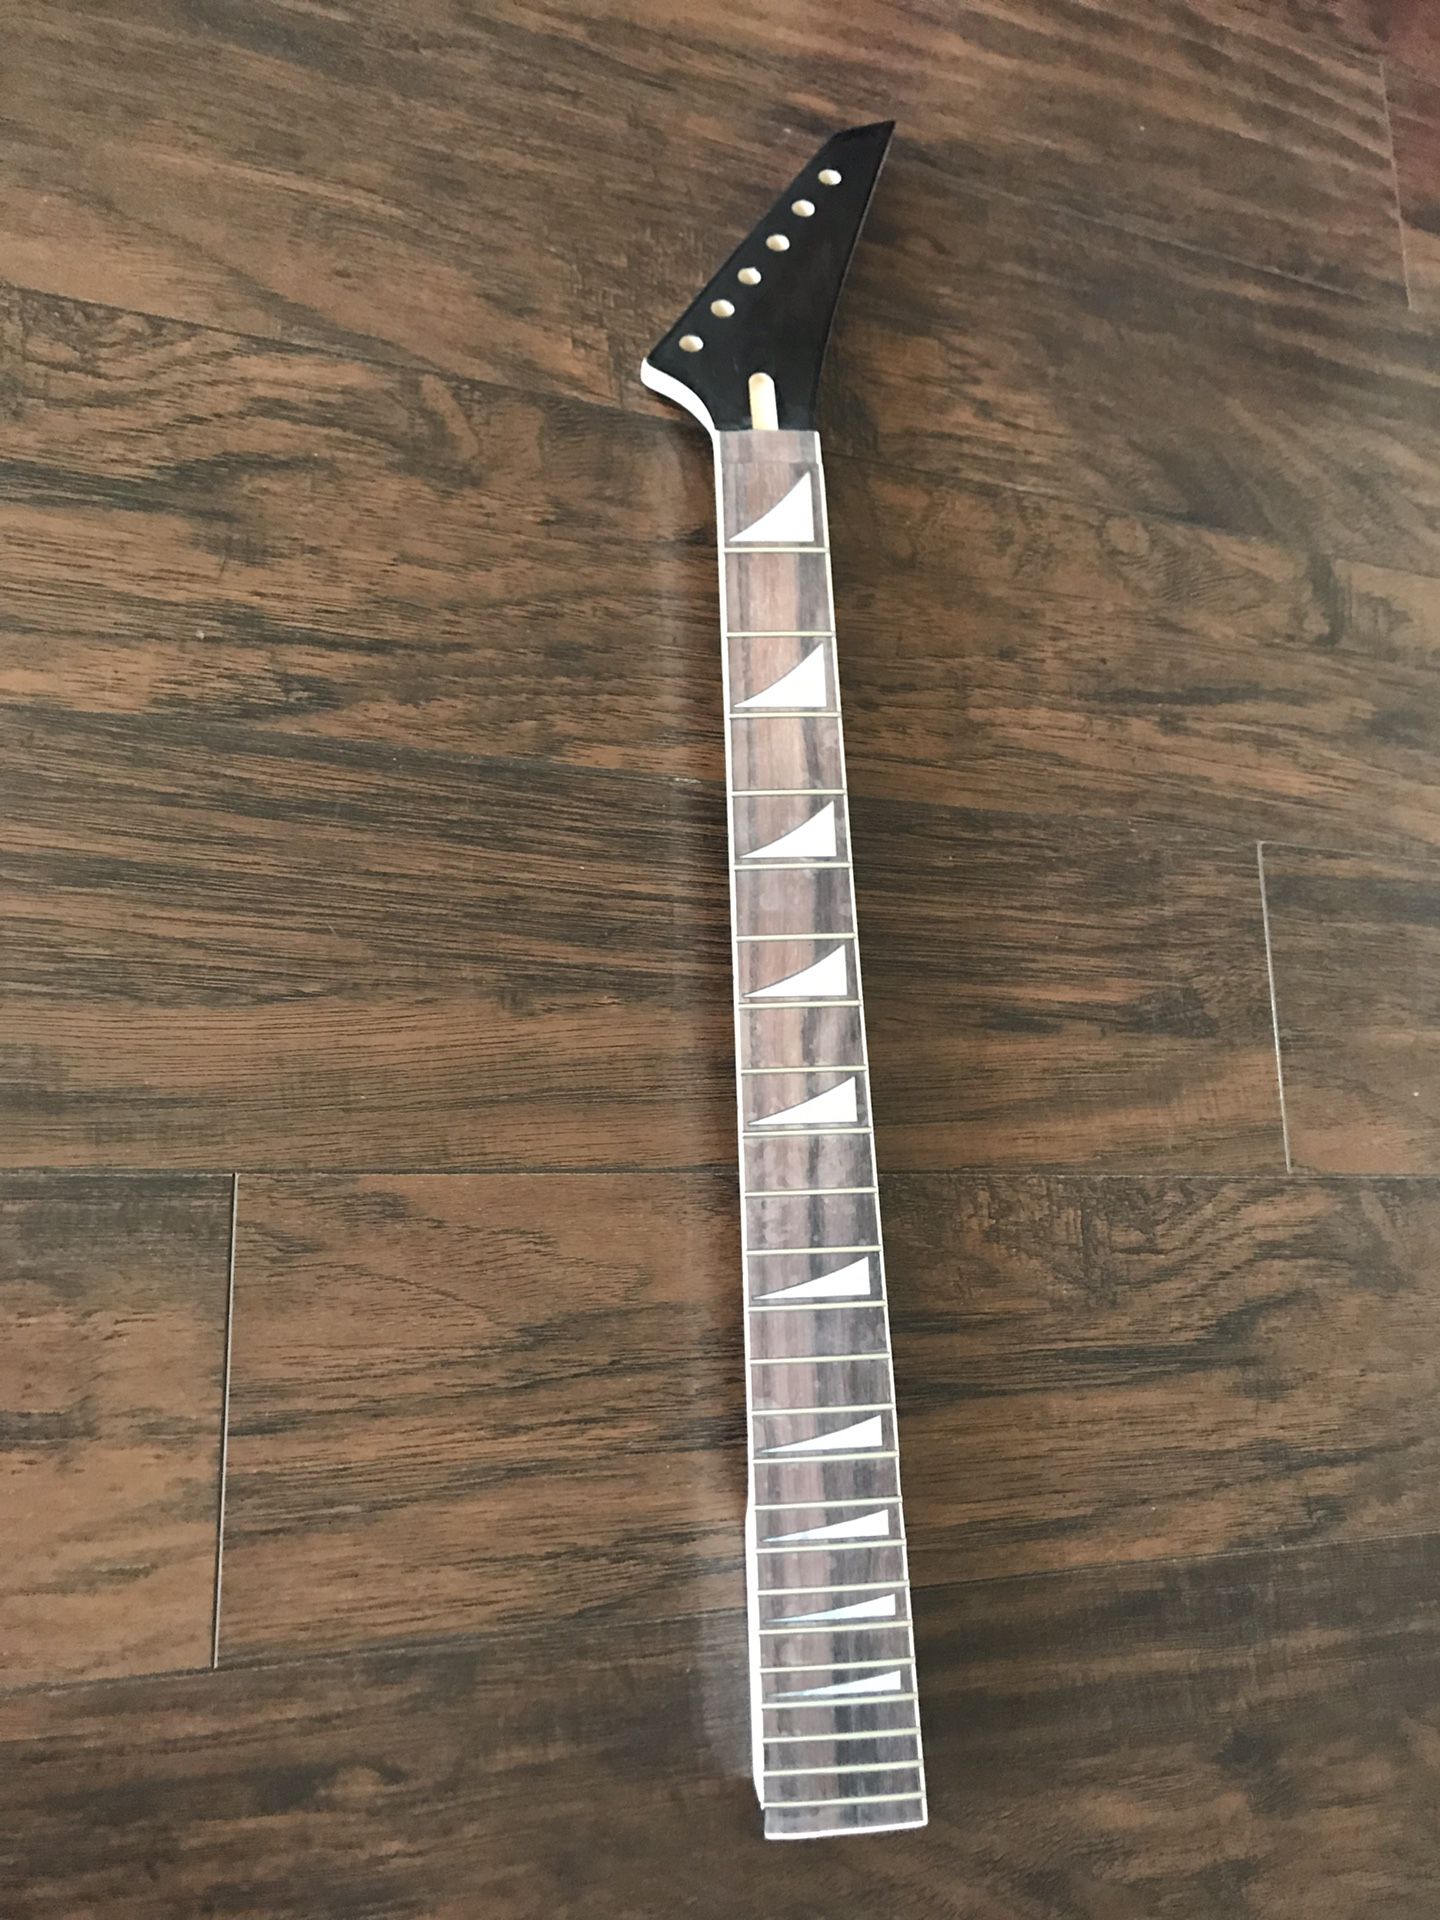 Guitar neck